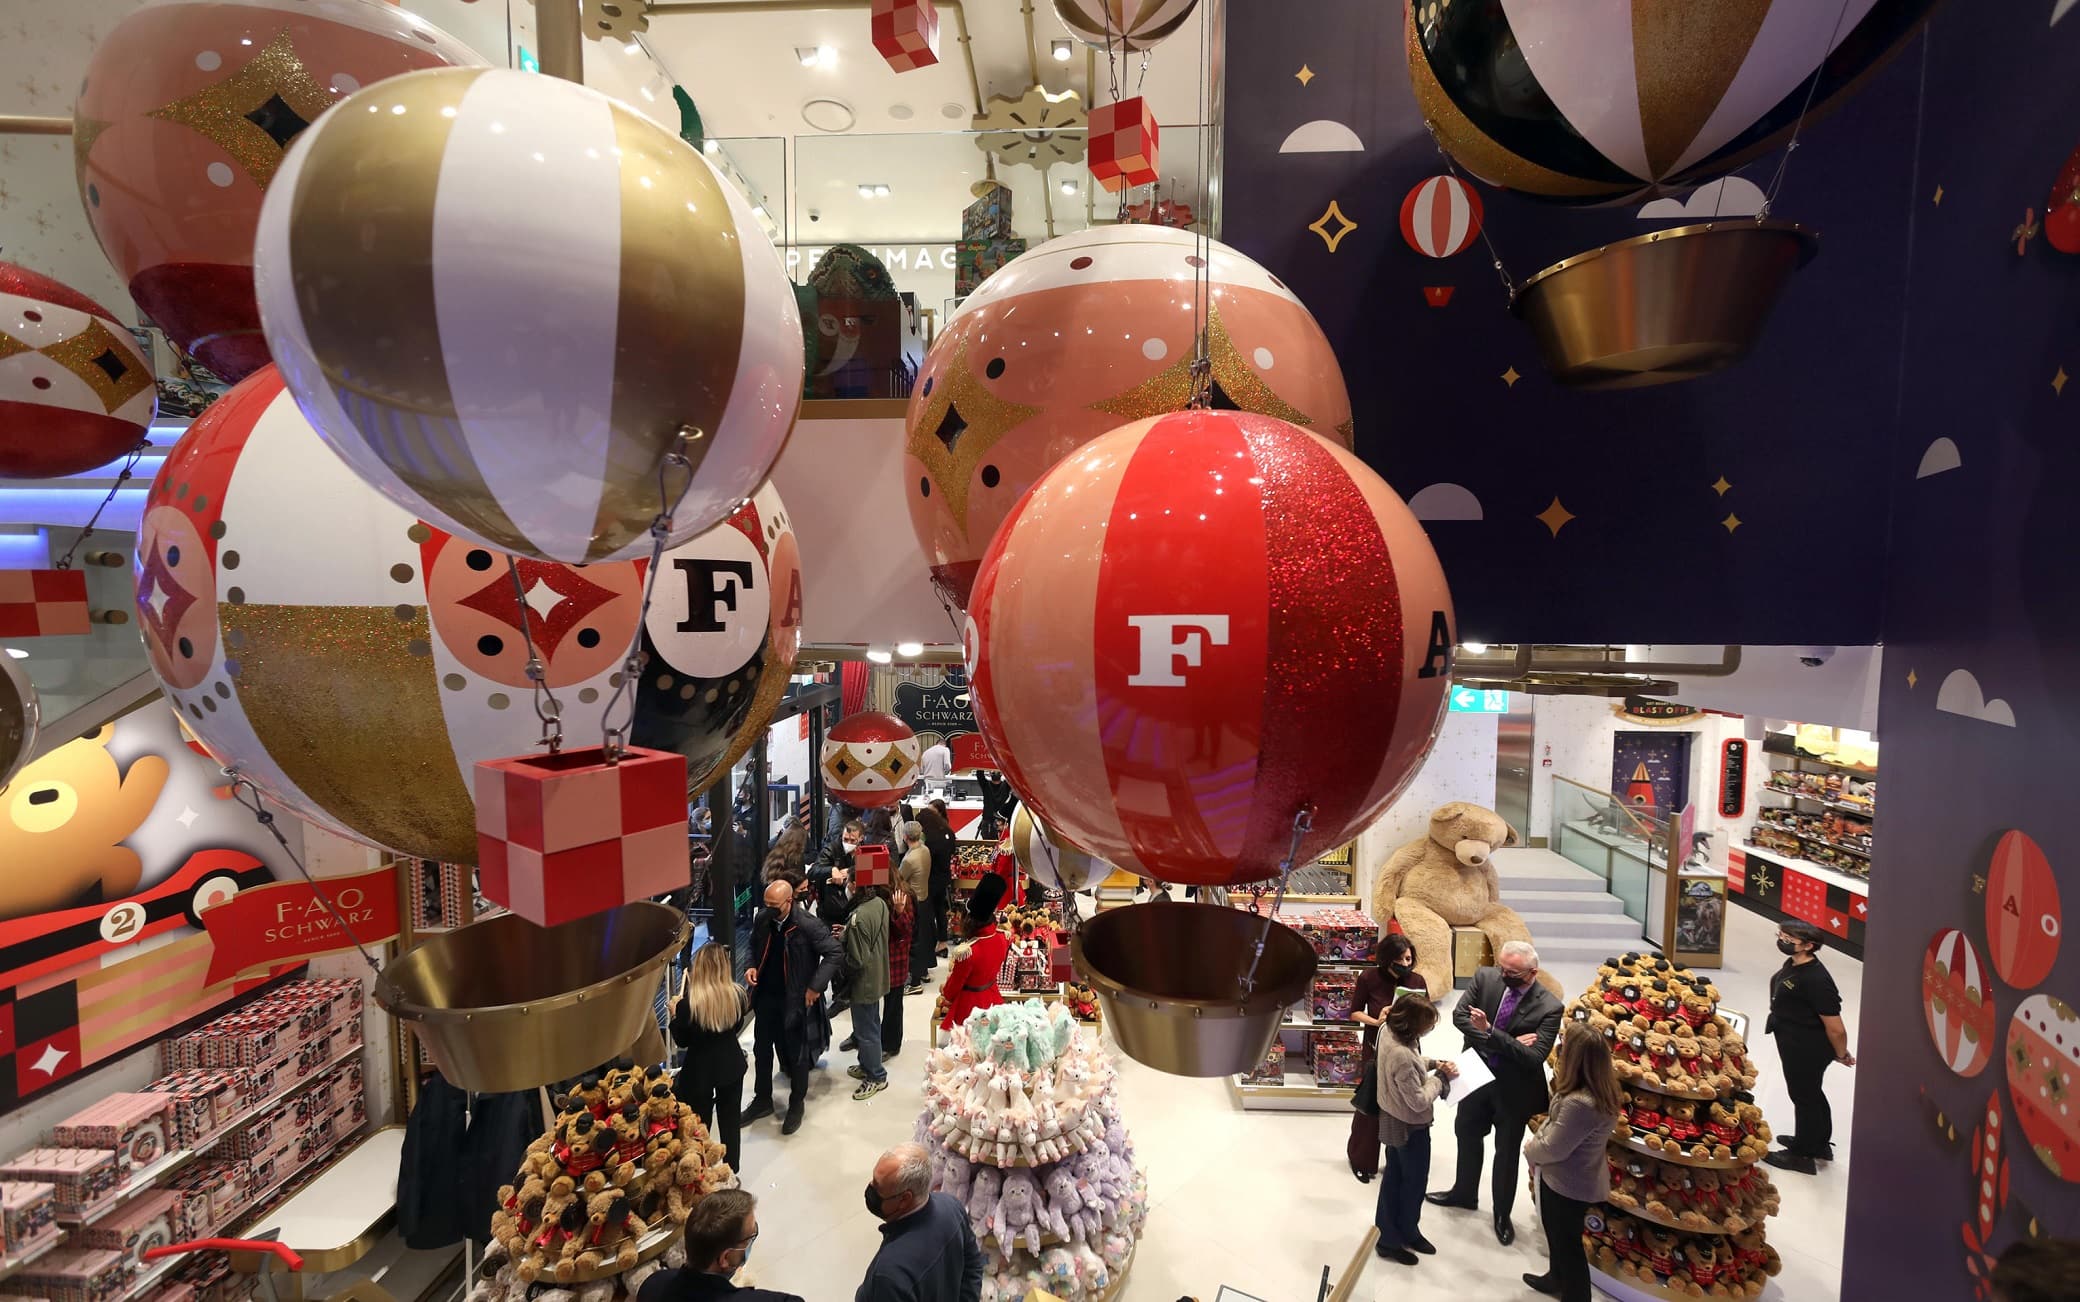 Giocattoli esposti in occasione dell'inaugurazione del negozio di giocattoli  FAO Schwarz  il marchio fondato nel 1862 che fa il suo primo ingresso in Europa, Milano, 27 Ottobre 2021. ANSA / MATTEO BAZZI